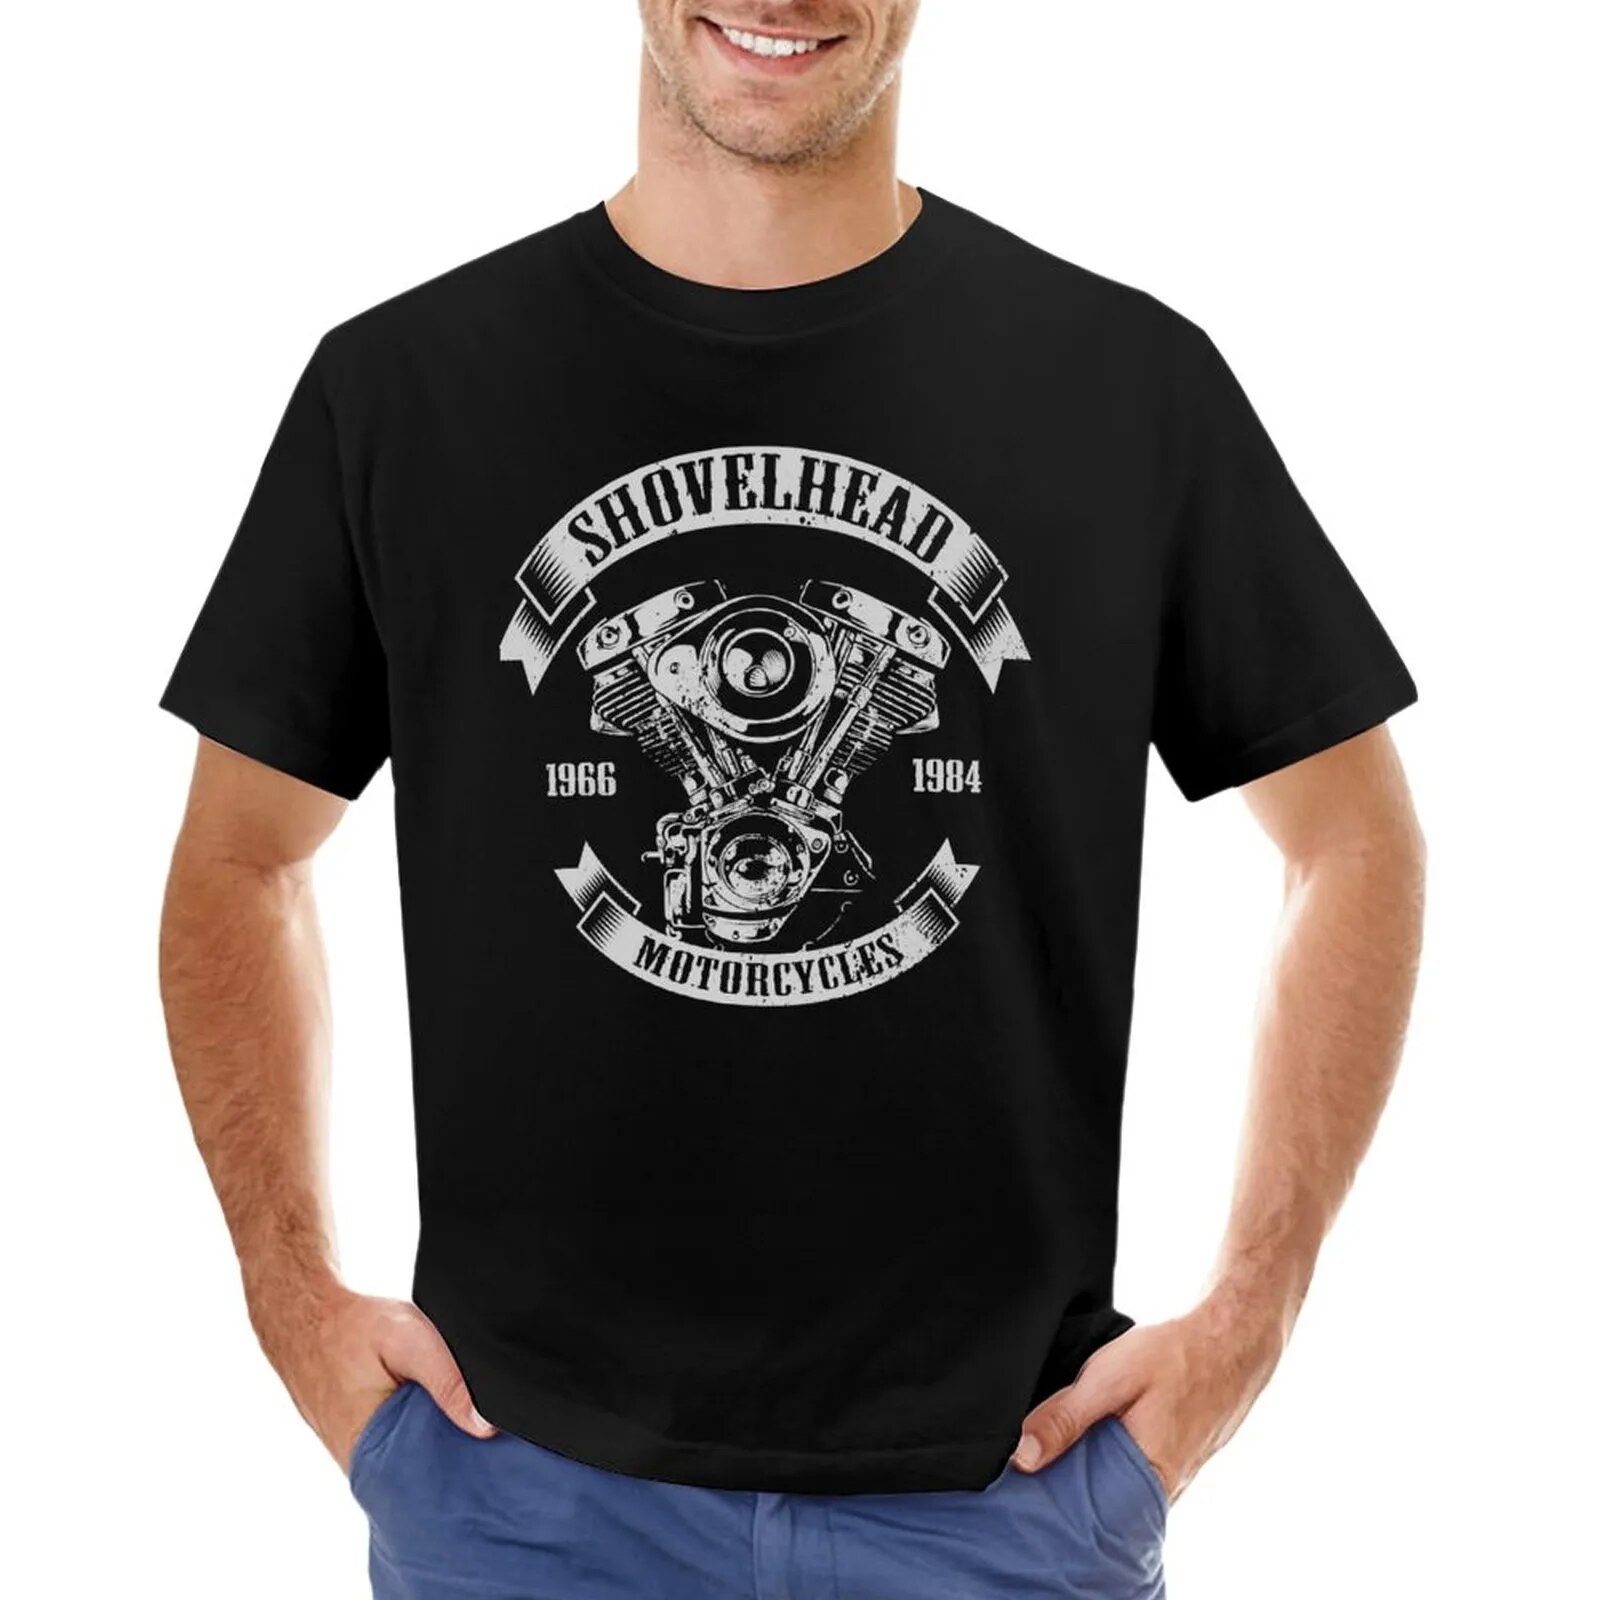 Mens Best Shovelhead Graphic For Fans T-Shirt cute clothes Tee shirt men t shirt